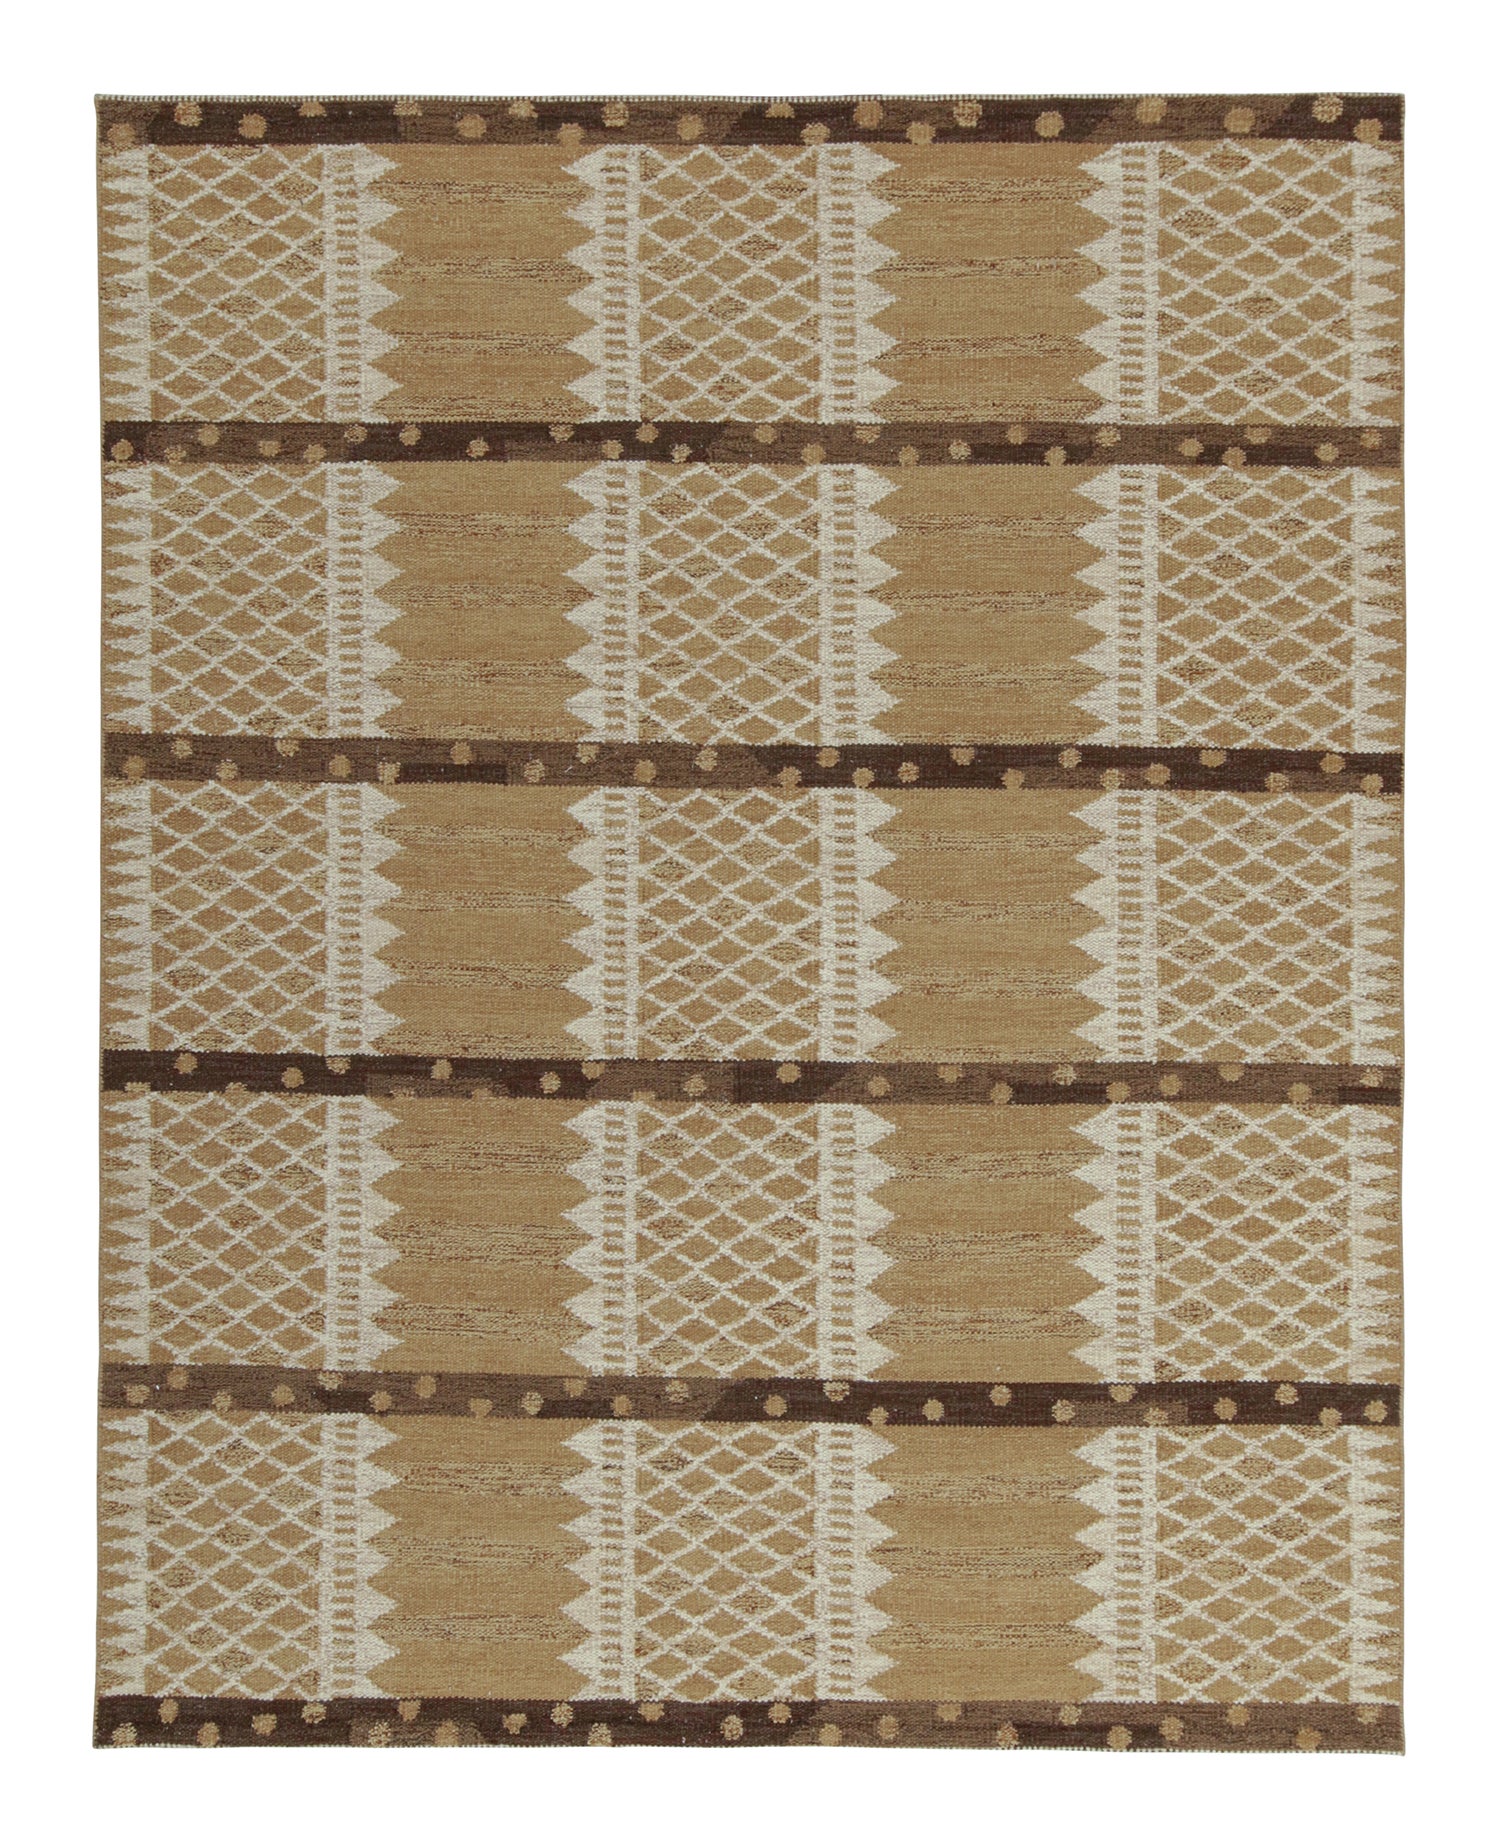 Rug & Kilim's skandinavischer Kilim in Beige-Braun & Weiß mit geometrischem Muster